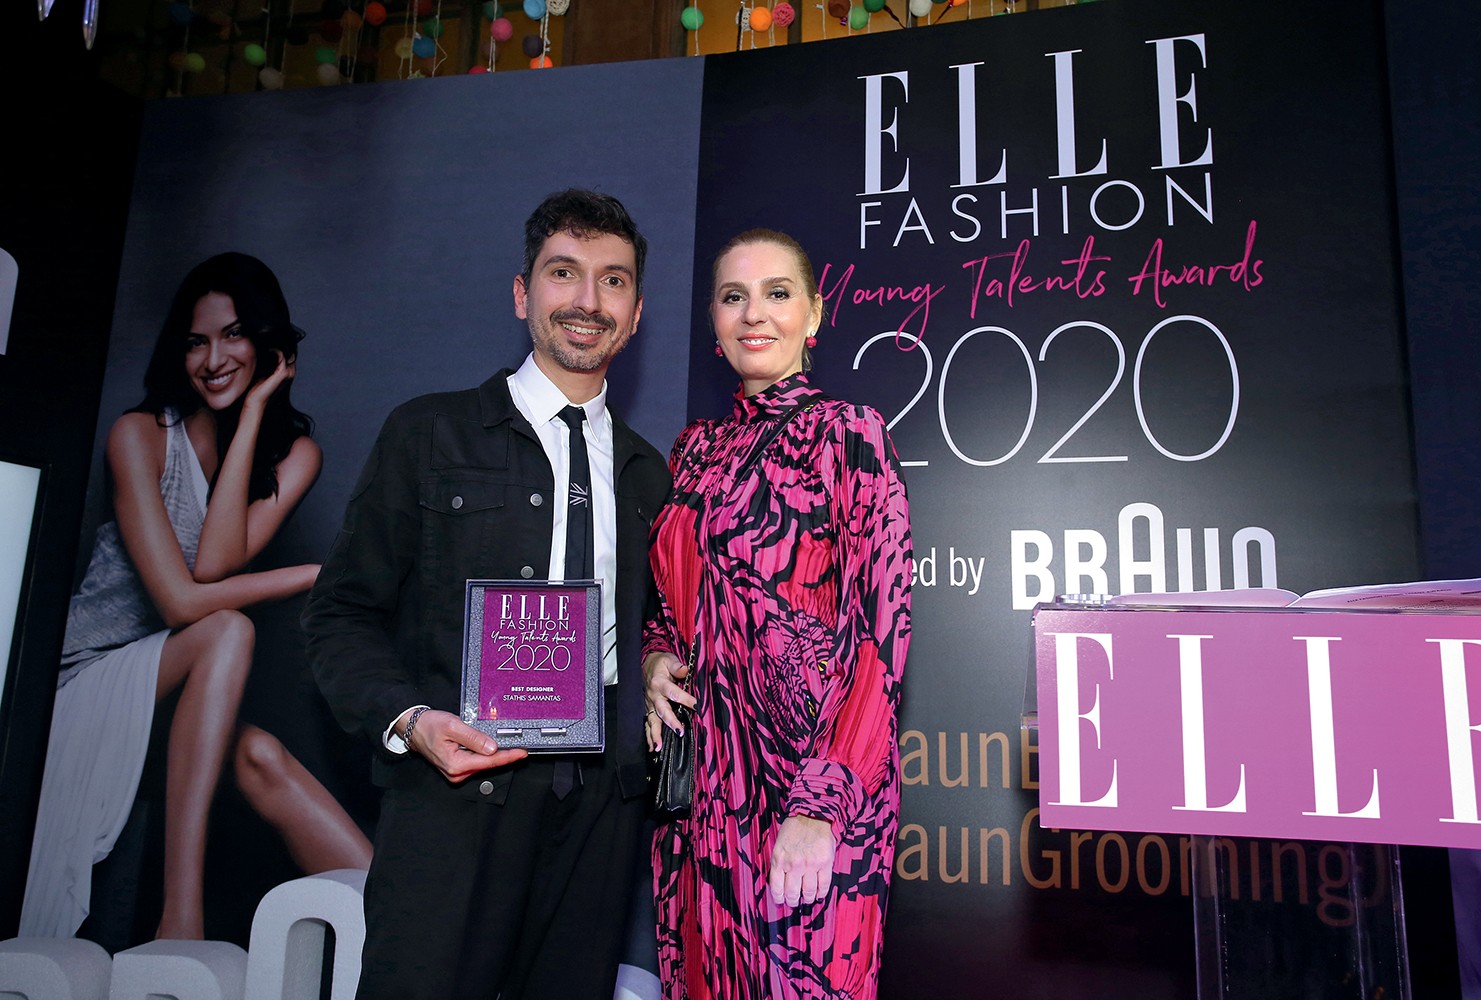 ELLE Fashion Young Talents Awards 2020: Η λαμπερή απονομή των πρώτων βραβείων νέων σχεδιαστών του ELLE Το περιοδικό ELLE, τα νέα ταλέντα της ελληνικής μόδας και το πιο hot fashion κοινό της πόλης, έδωσαν ραντεβού στο θρυλικό Rock n Roll Athens στο Κολωνάκι, για μια βραδιά γεμάτη λάμψη. Ο λόγος ήταν φυσικά τα ELLE Fashion Young Talents Awards, τα πρώτα μας βραβεία για την ανάδειξη των νέων ταλαντούχων Ελλήνων δημιουργών. Και το hashtag #EFYTA2020 πήρε φωτιά στα social media!